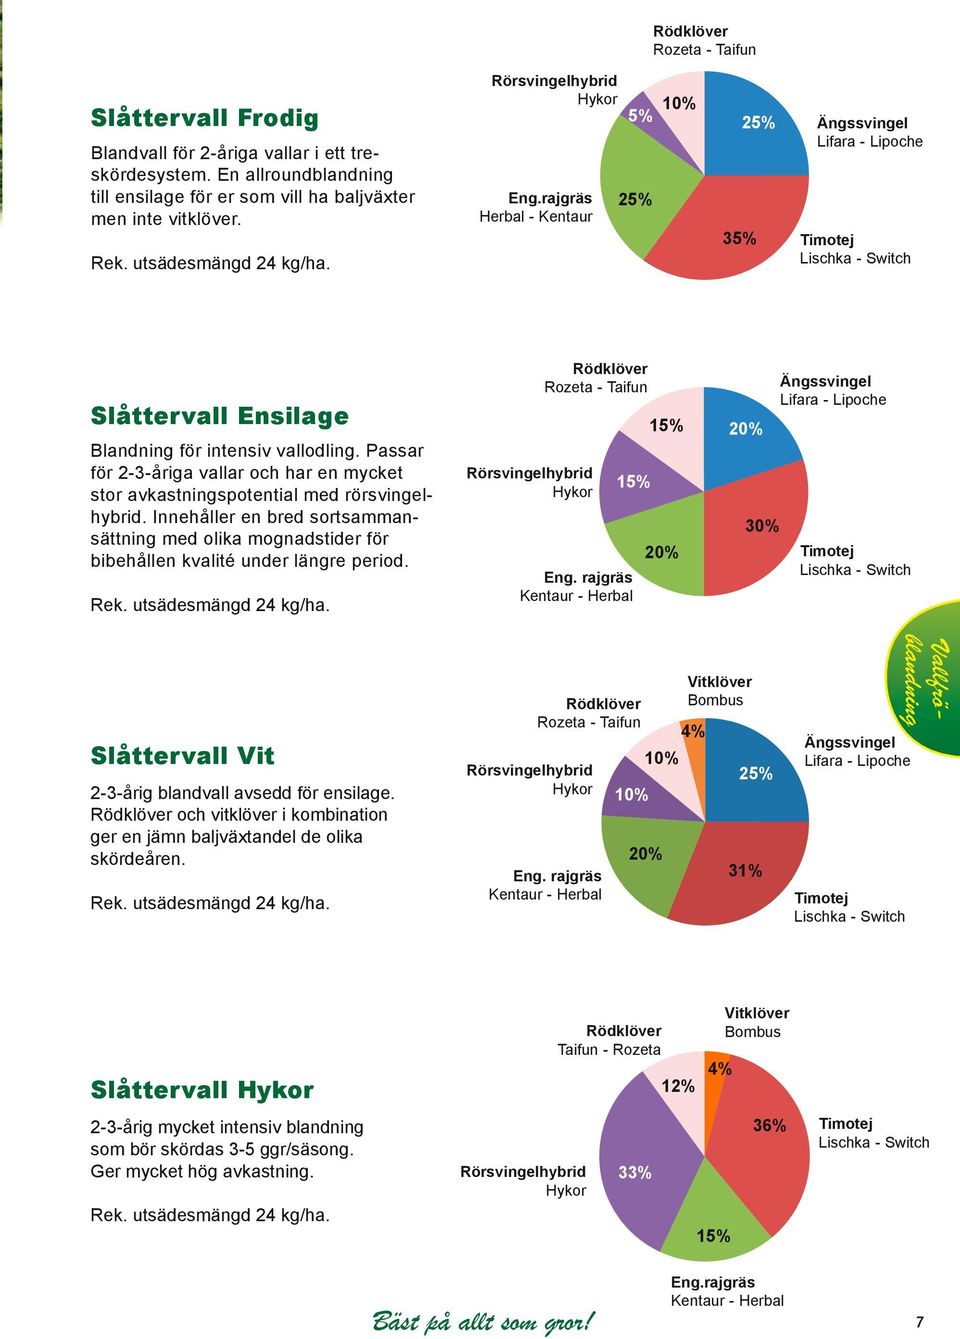 rajgräs Herbal - Kentaur 5% 25% 10% 25% Ängssvingel Lifara - Lipoche 1 2 3 4 5 35% Timotej Lischka - Switch Slåttervall Ensilage Blandning för intensiv vallodling.